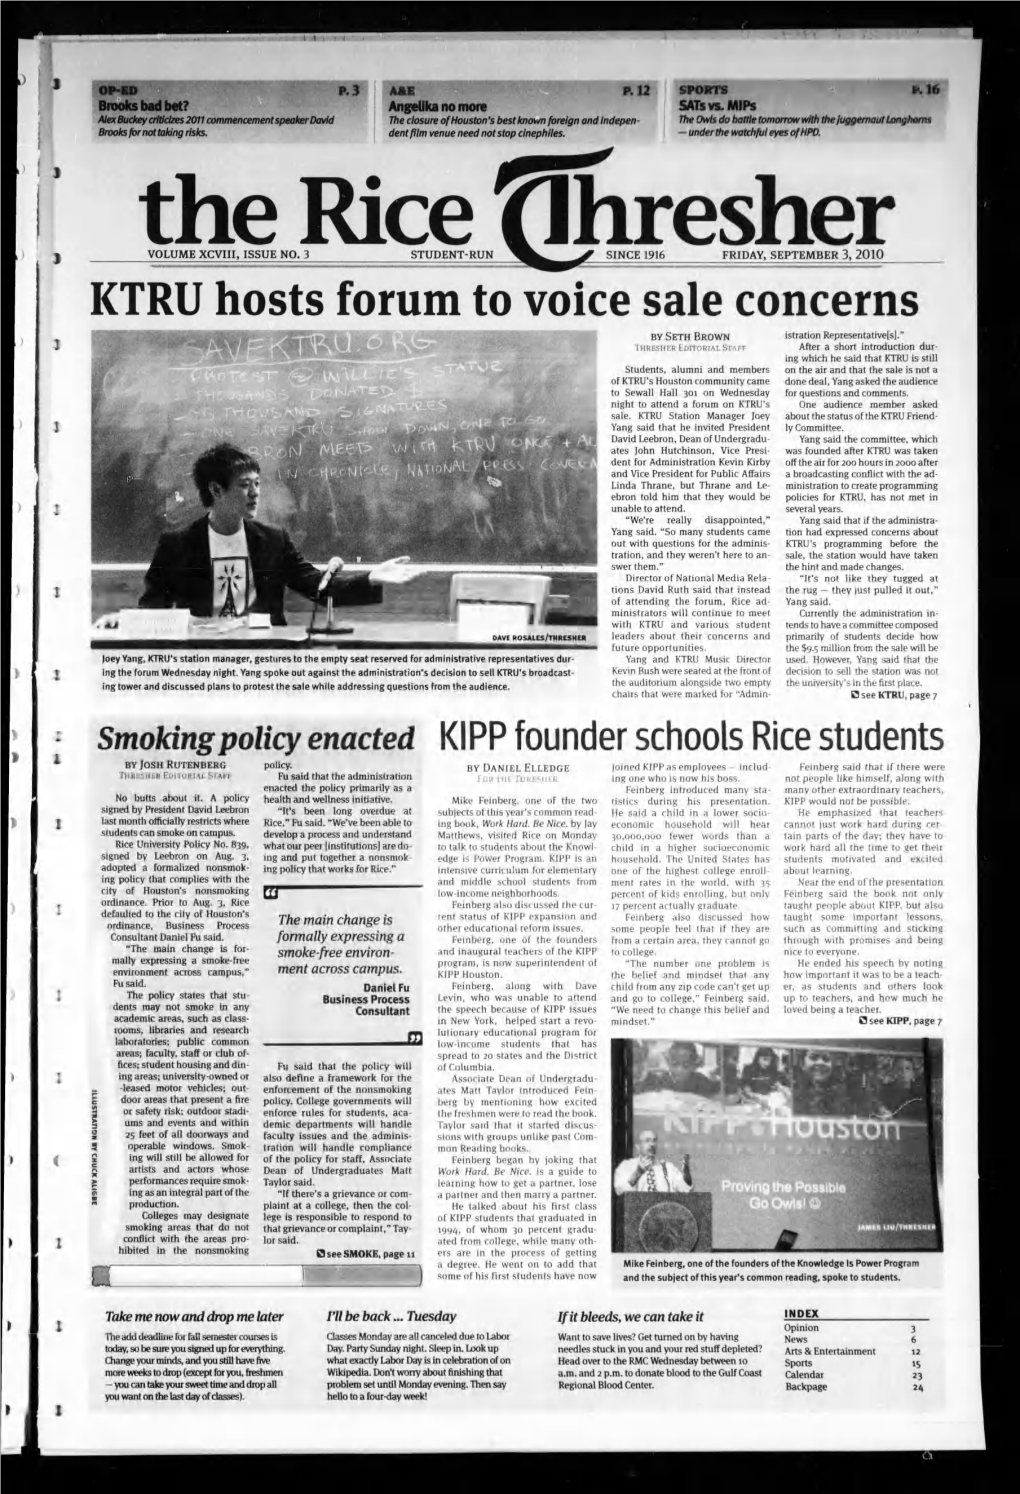 KTRU Hosts Forum to Voice Sale Concerns